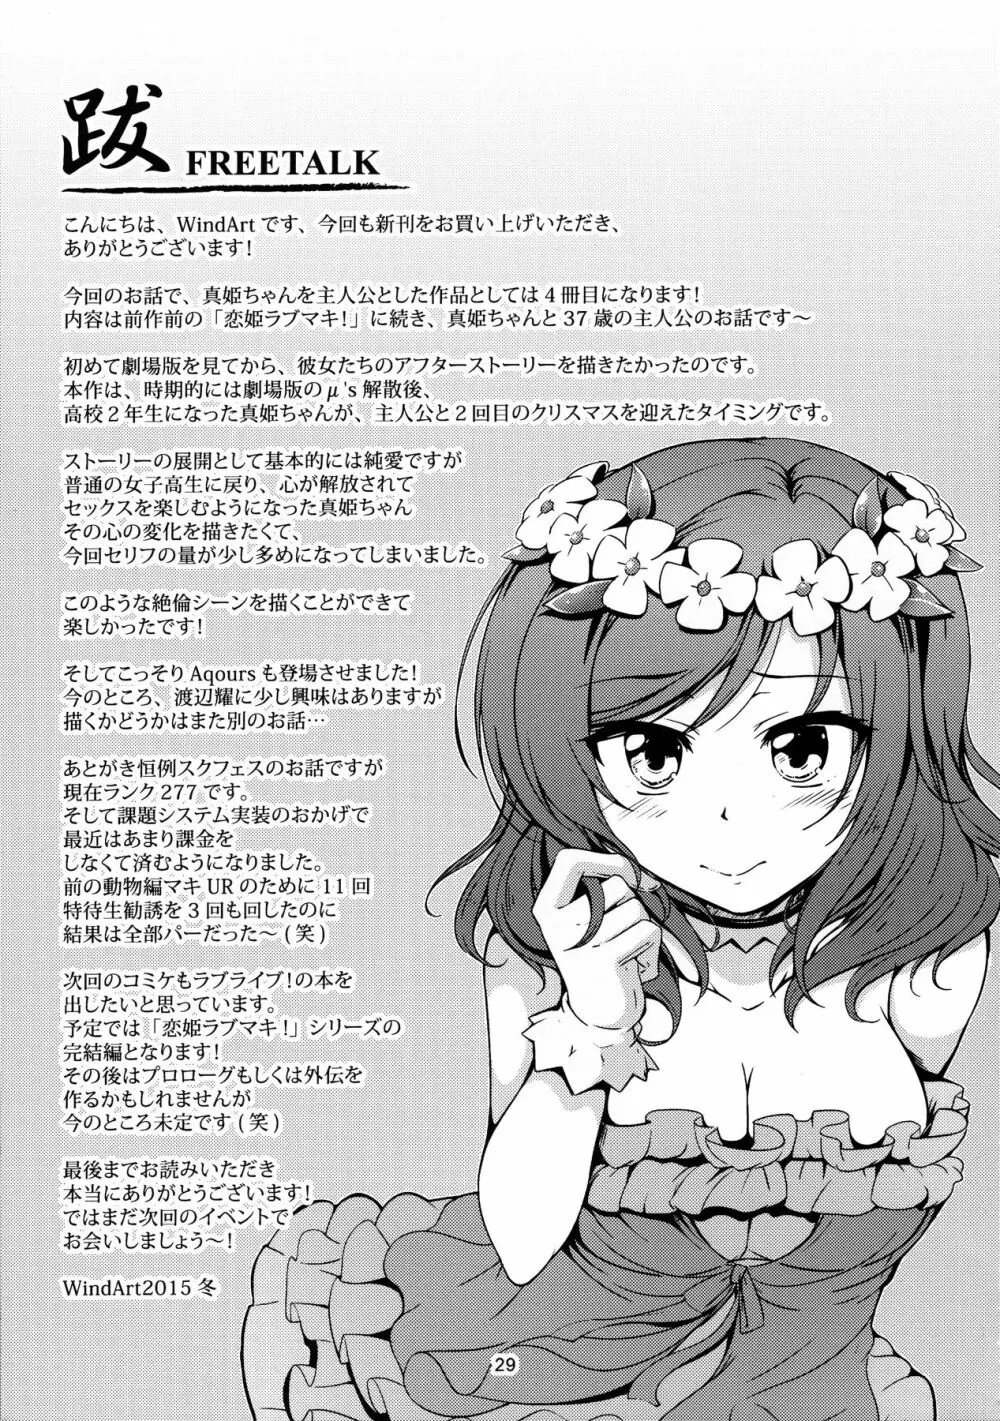 恋姫ラブマキ!!3 Page.30